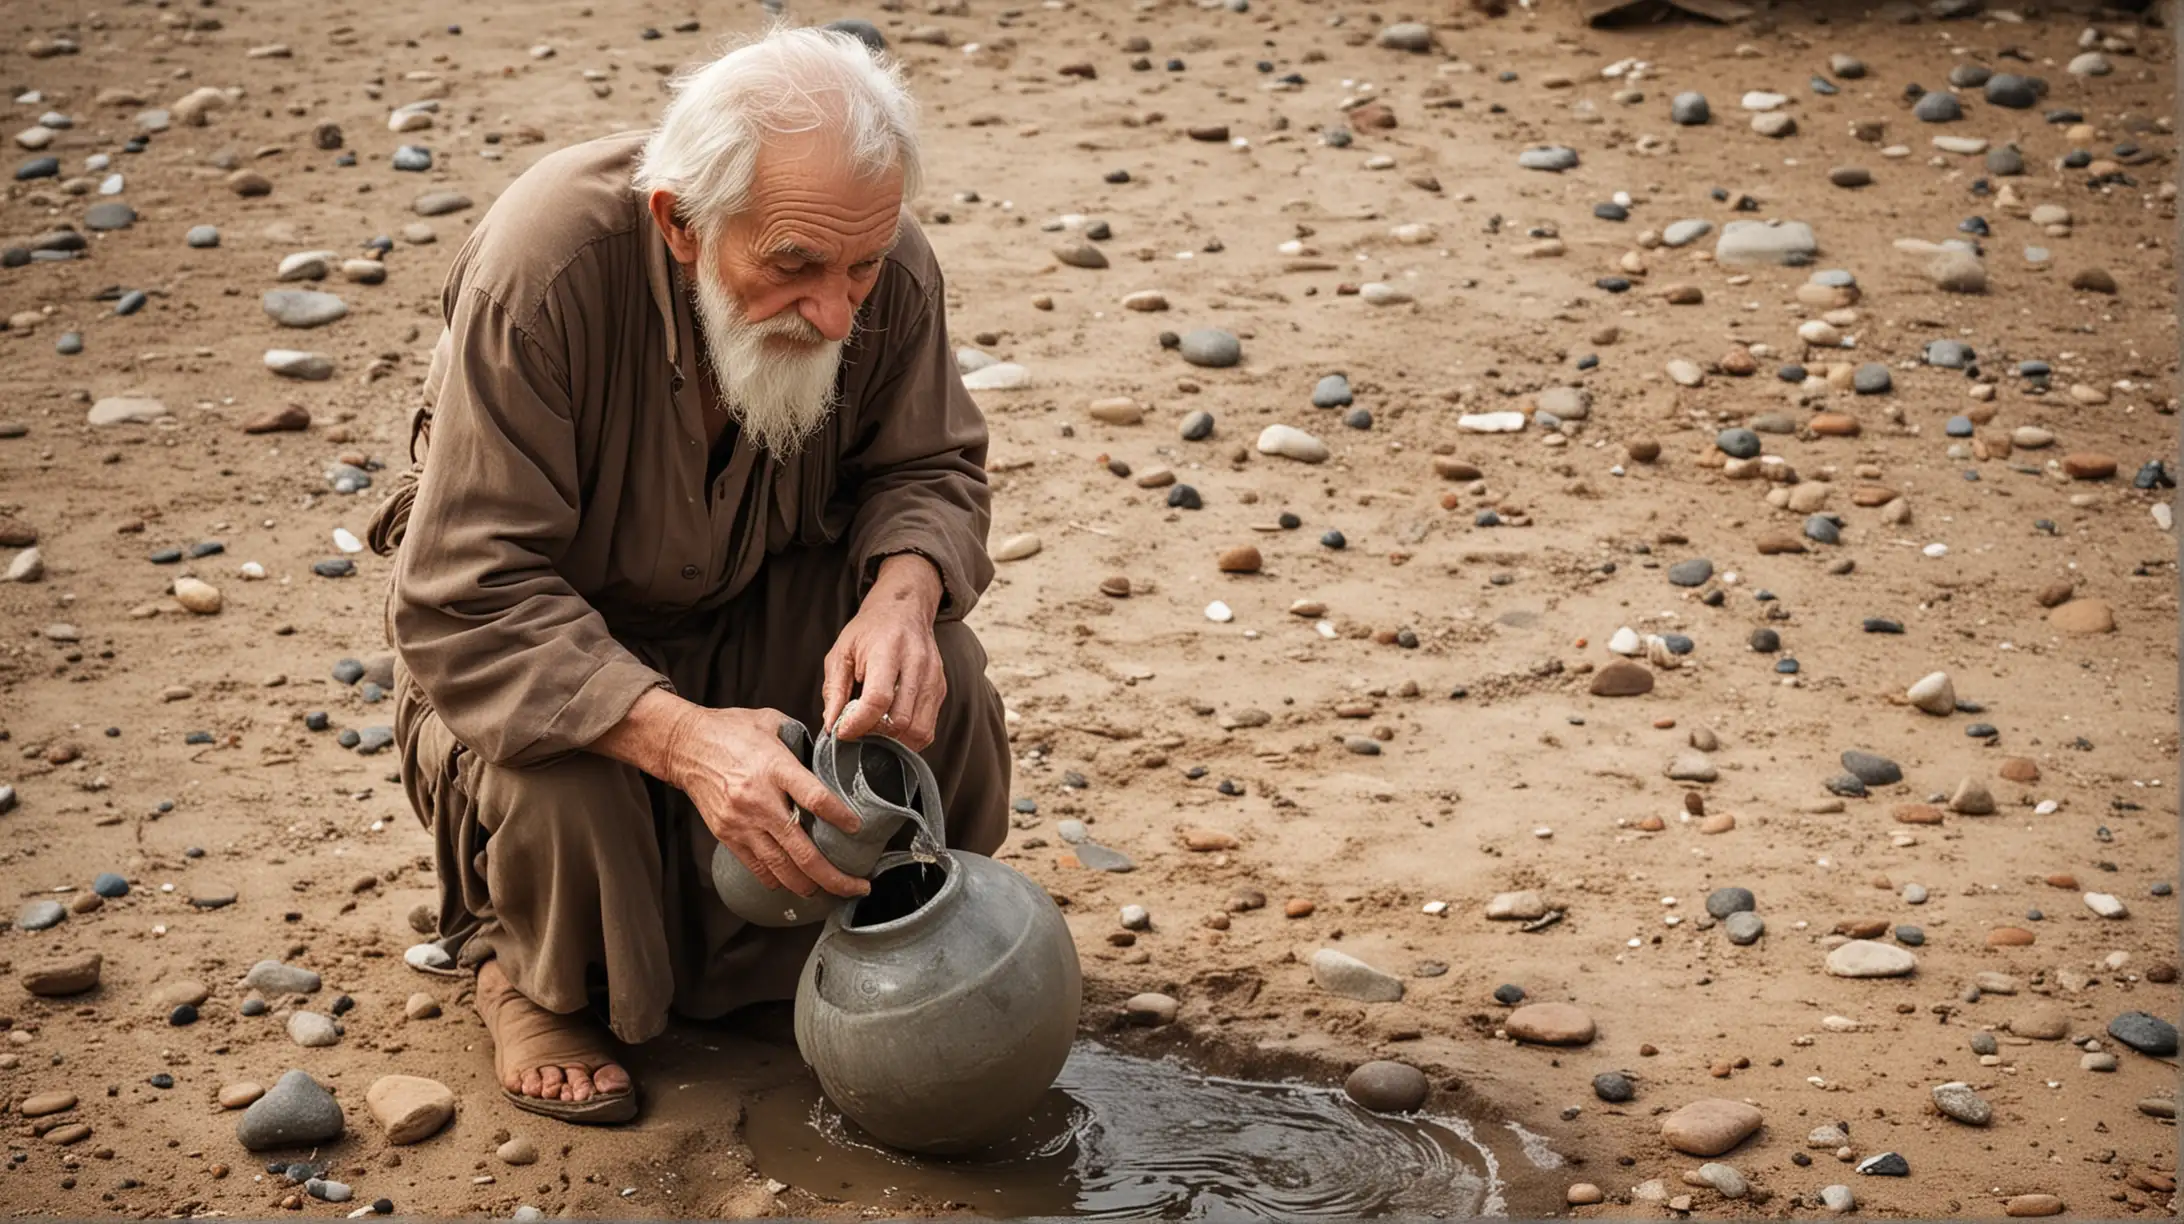 Мудрый старец  взял другой  кувшин с водой, и начал наливать её в   кувшин с камнями и песком пока вода не заполнила его до краёв. 